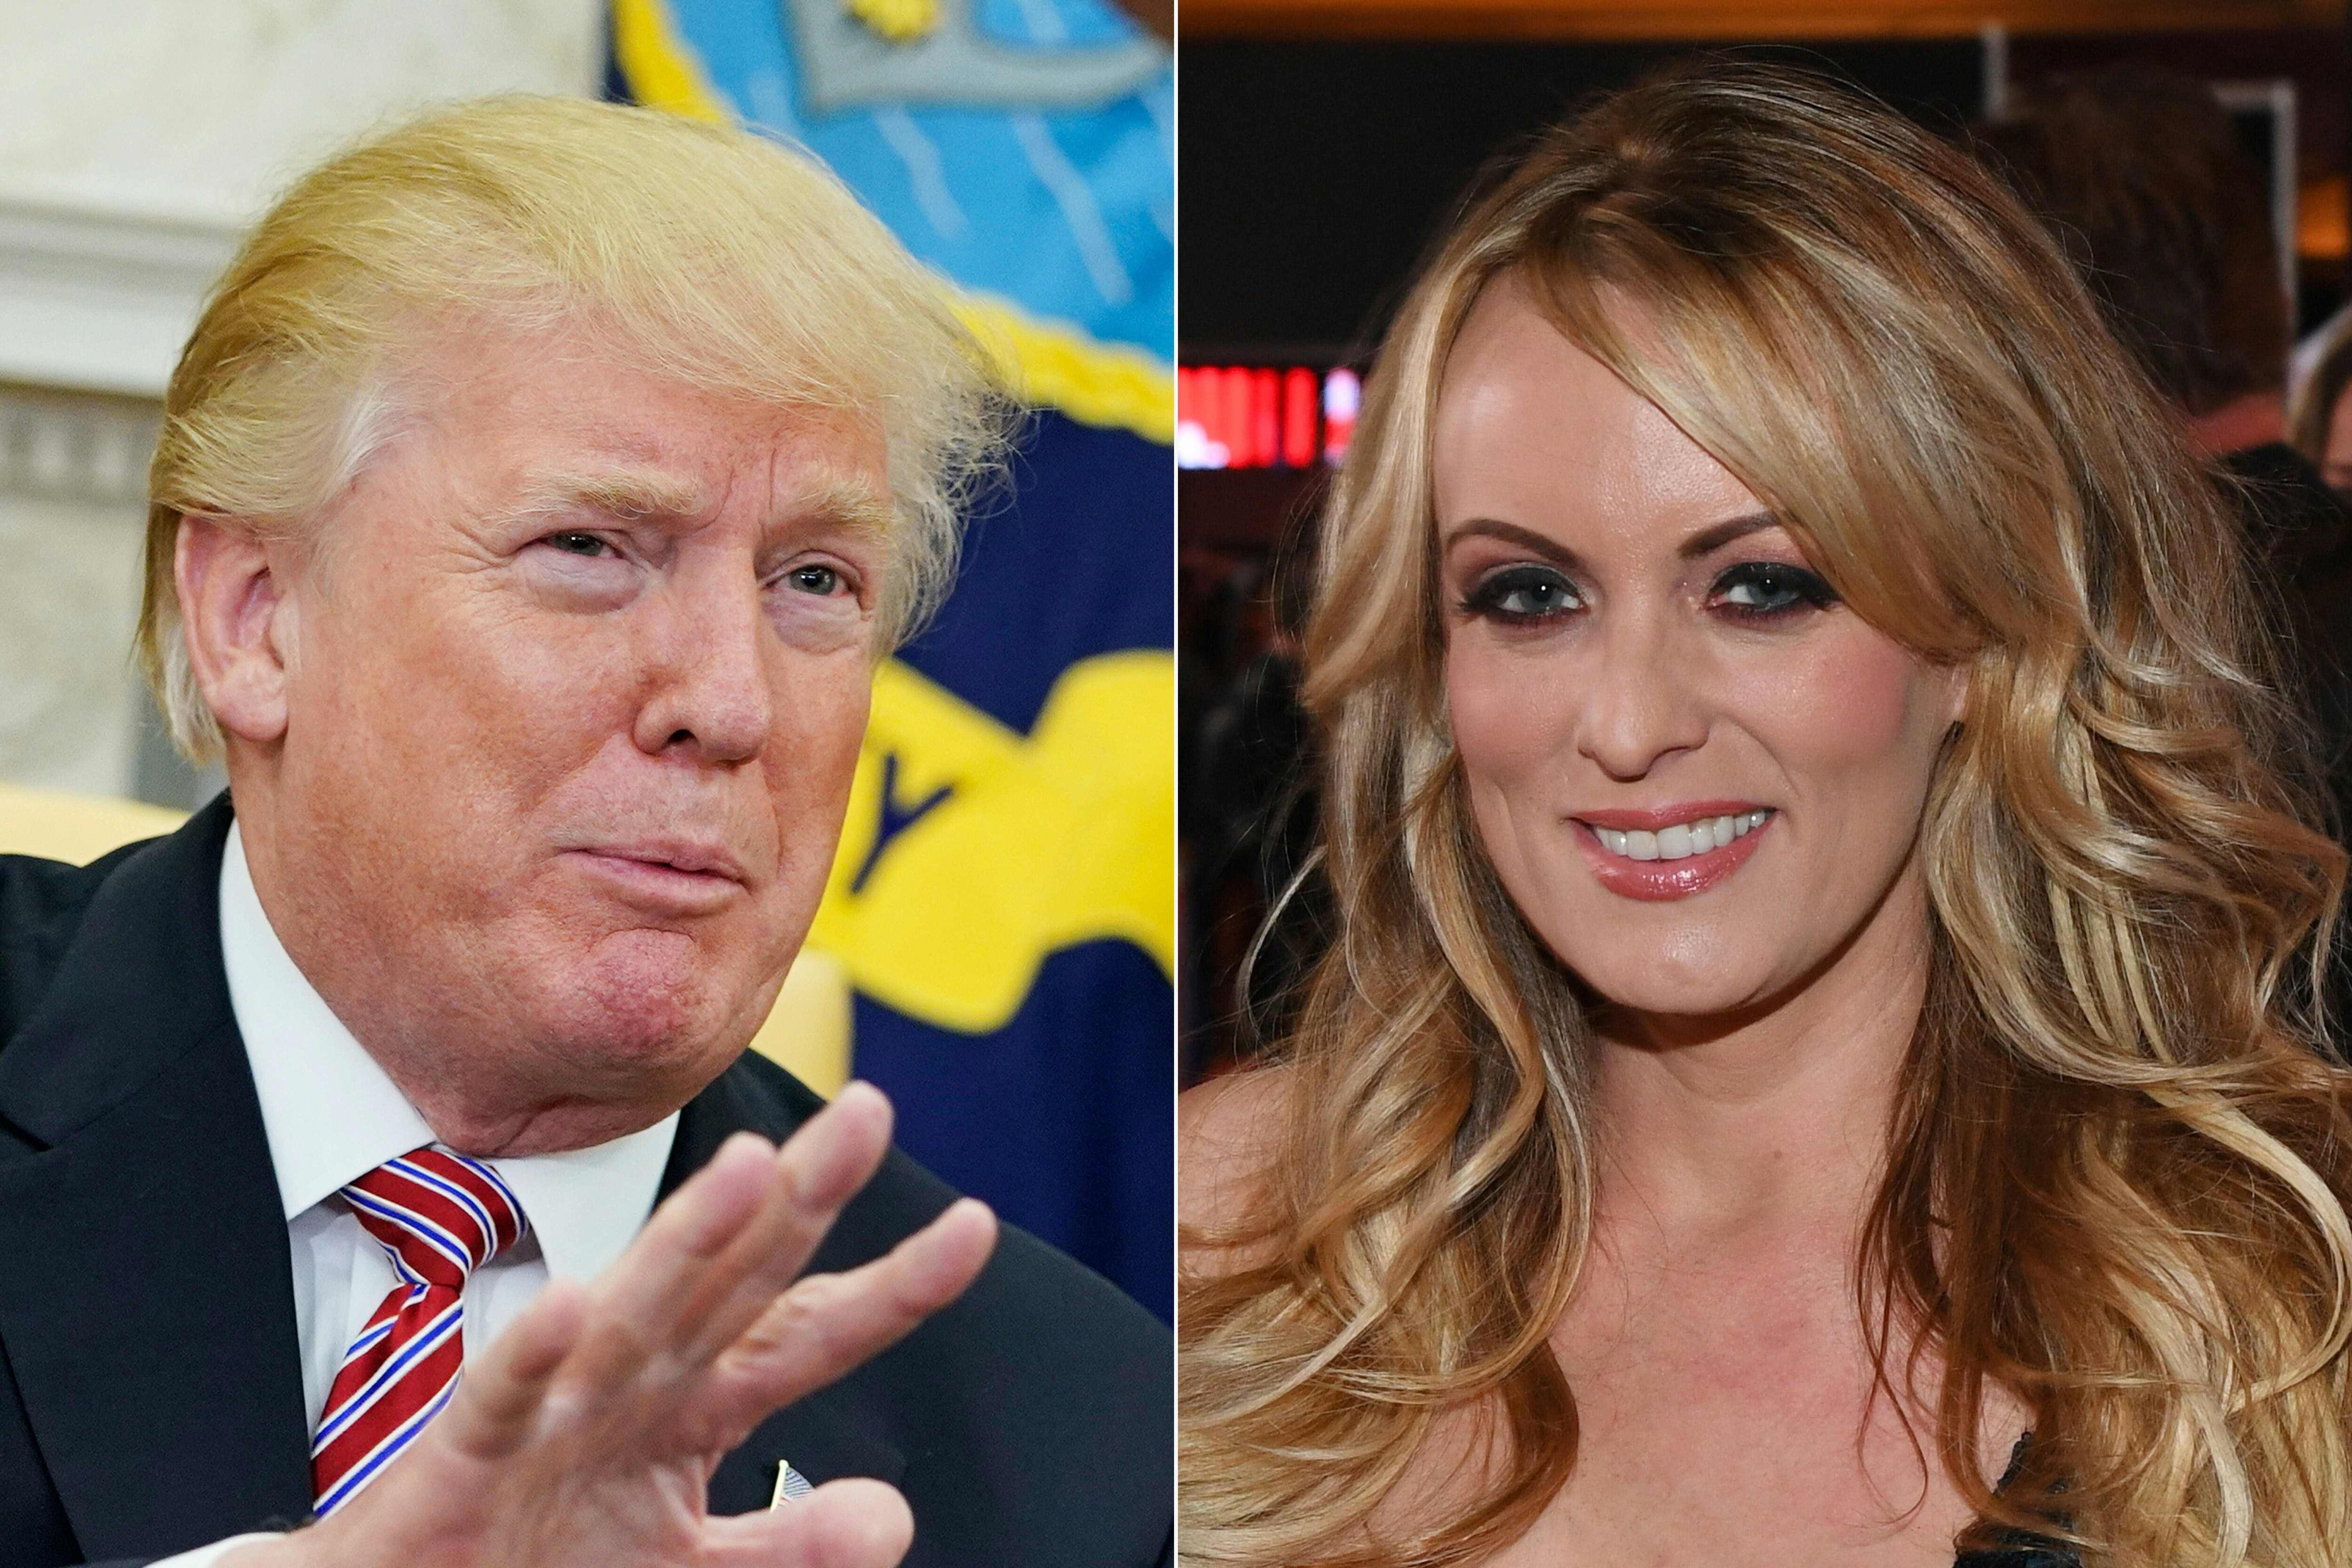 Este martes 7 de mayo se verán por primera vez en juicio el magnate Donald Trump y la actriz porno Stormy Daniels.